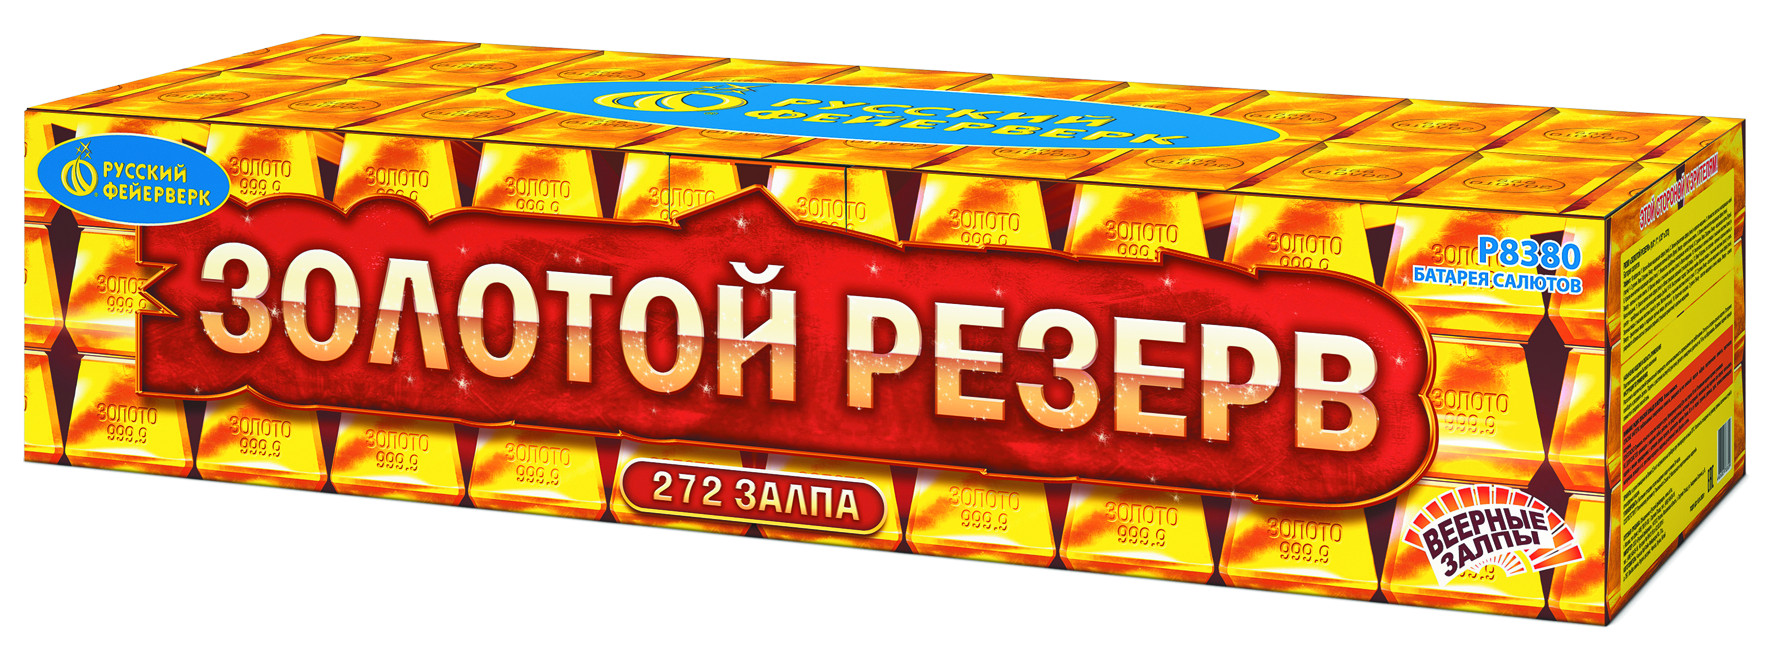 Золотой резерв - 44800 руб